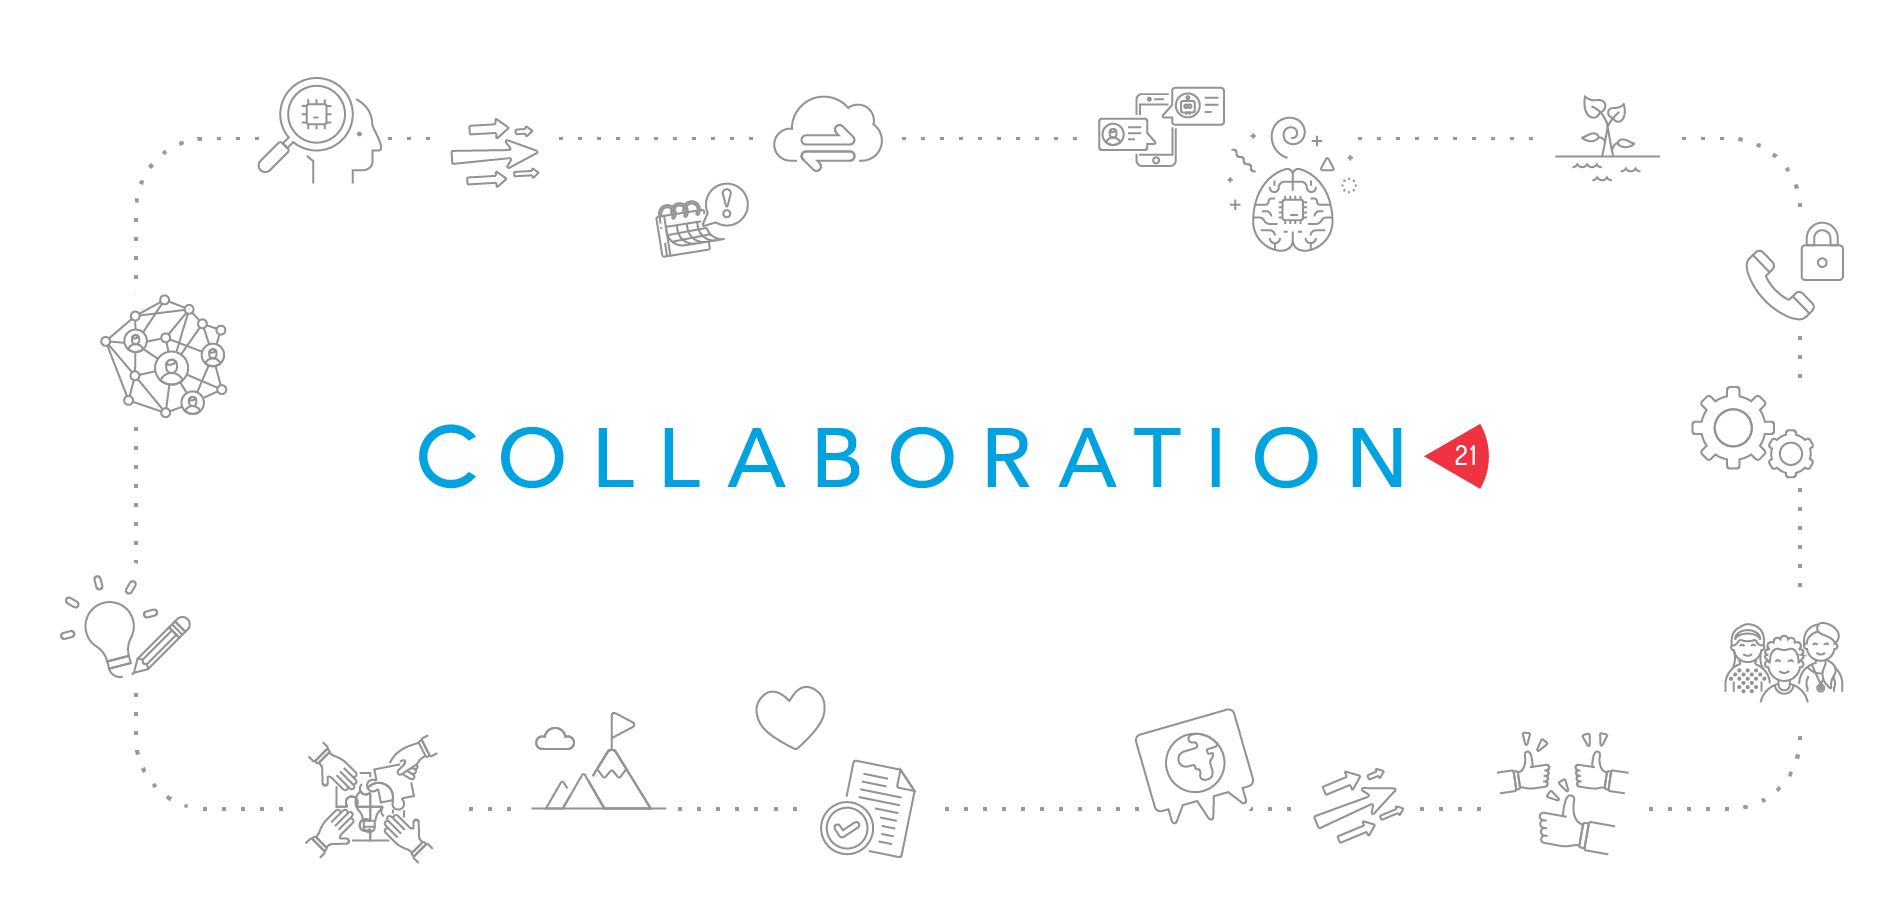 Collaboration 21